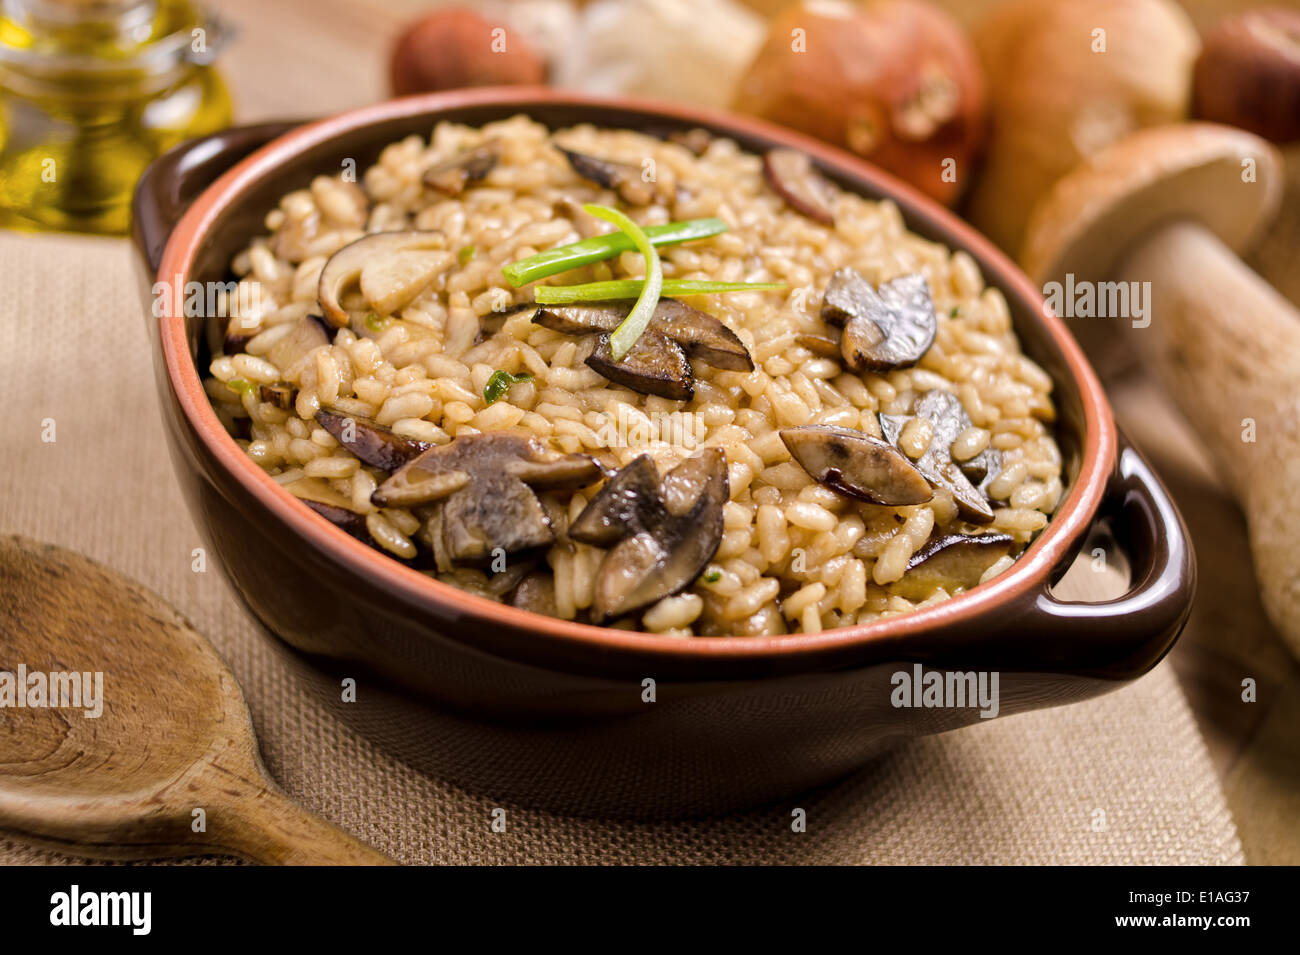 Un plato de risotto de setas silvestres con arroz arbóreo y hongos porcini. Foto de stock